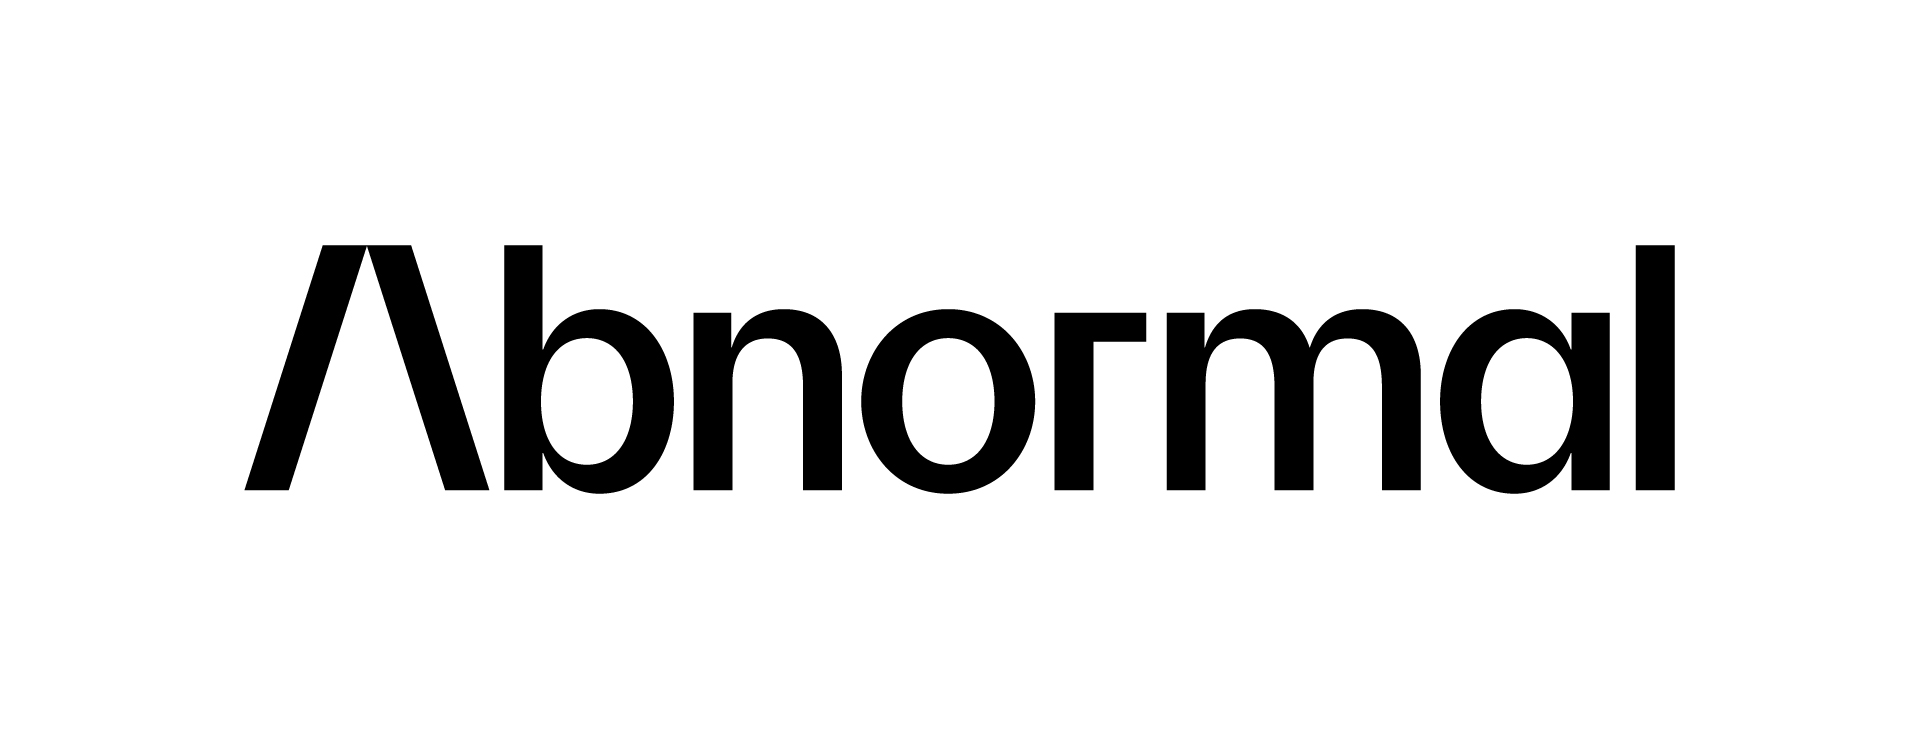 Abnormal-logo-black